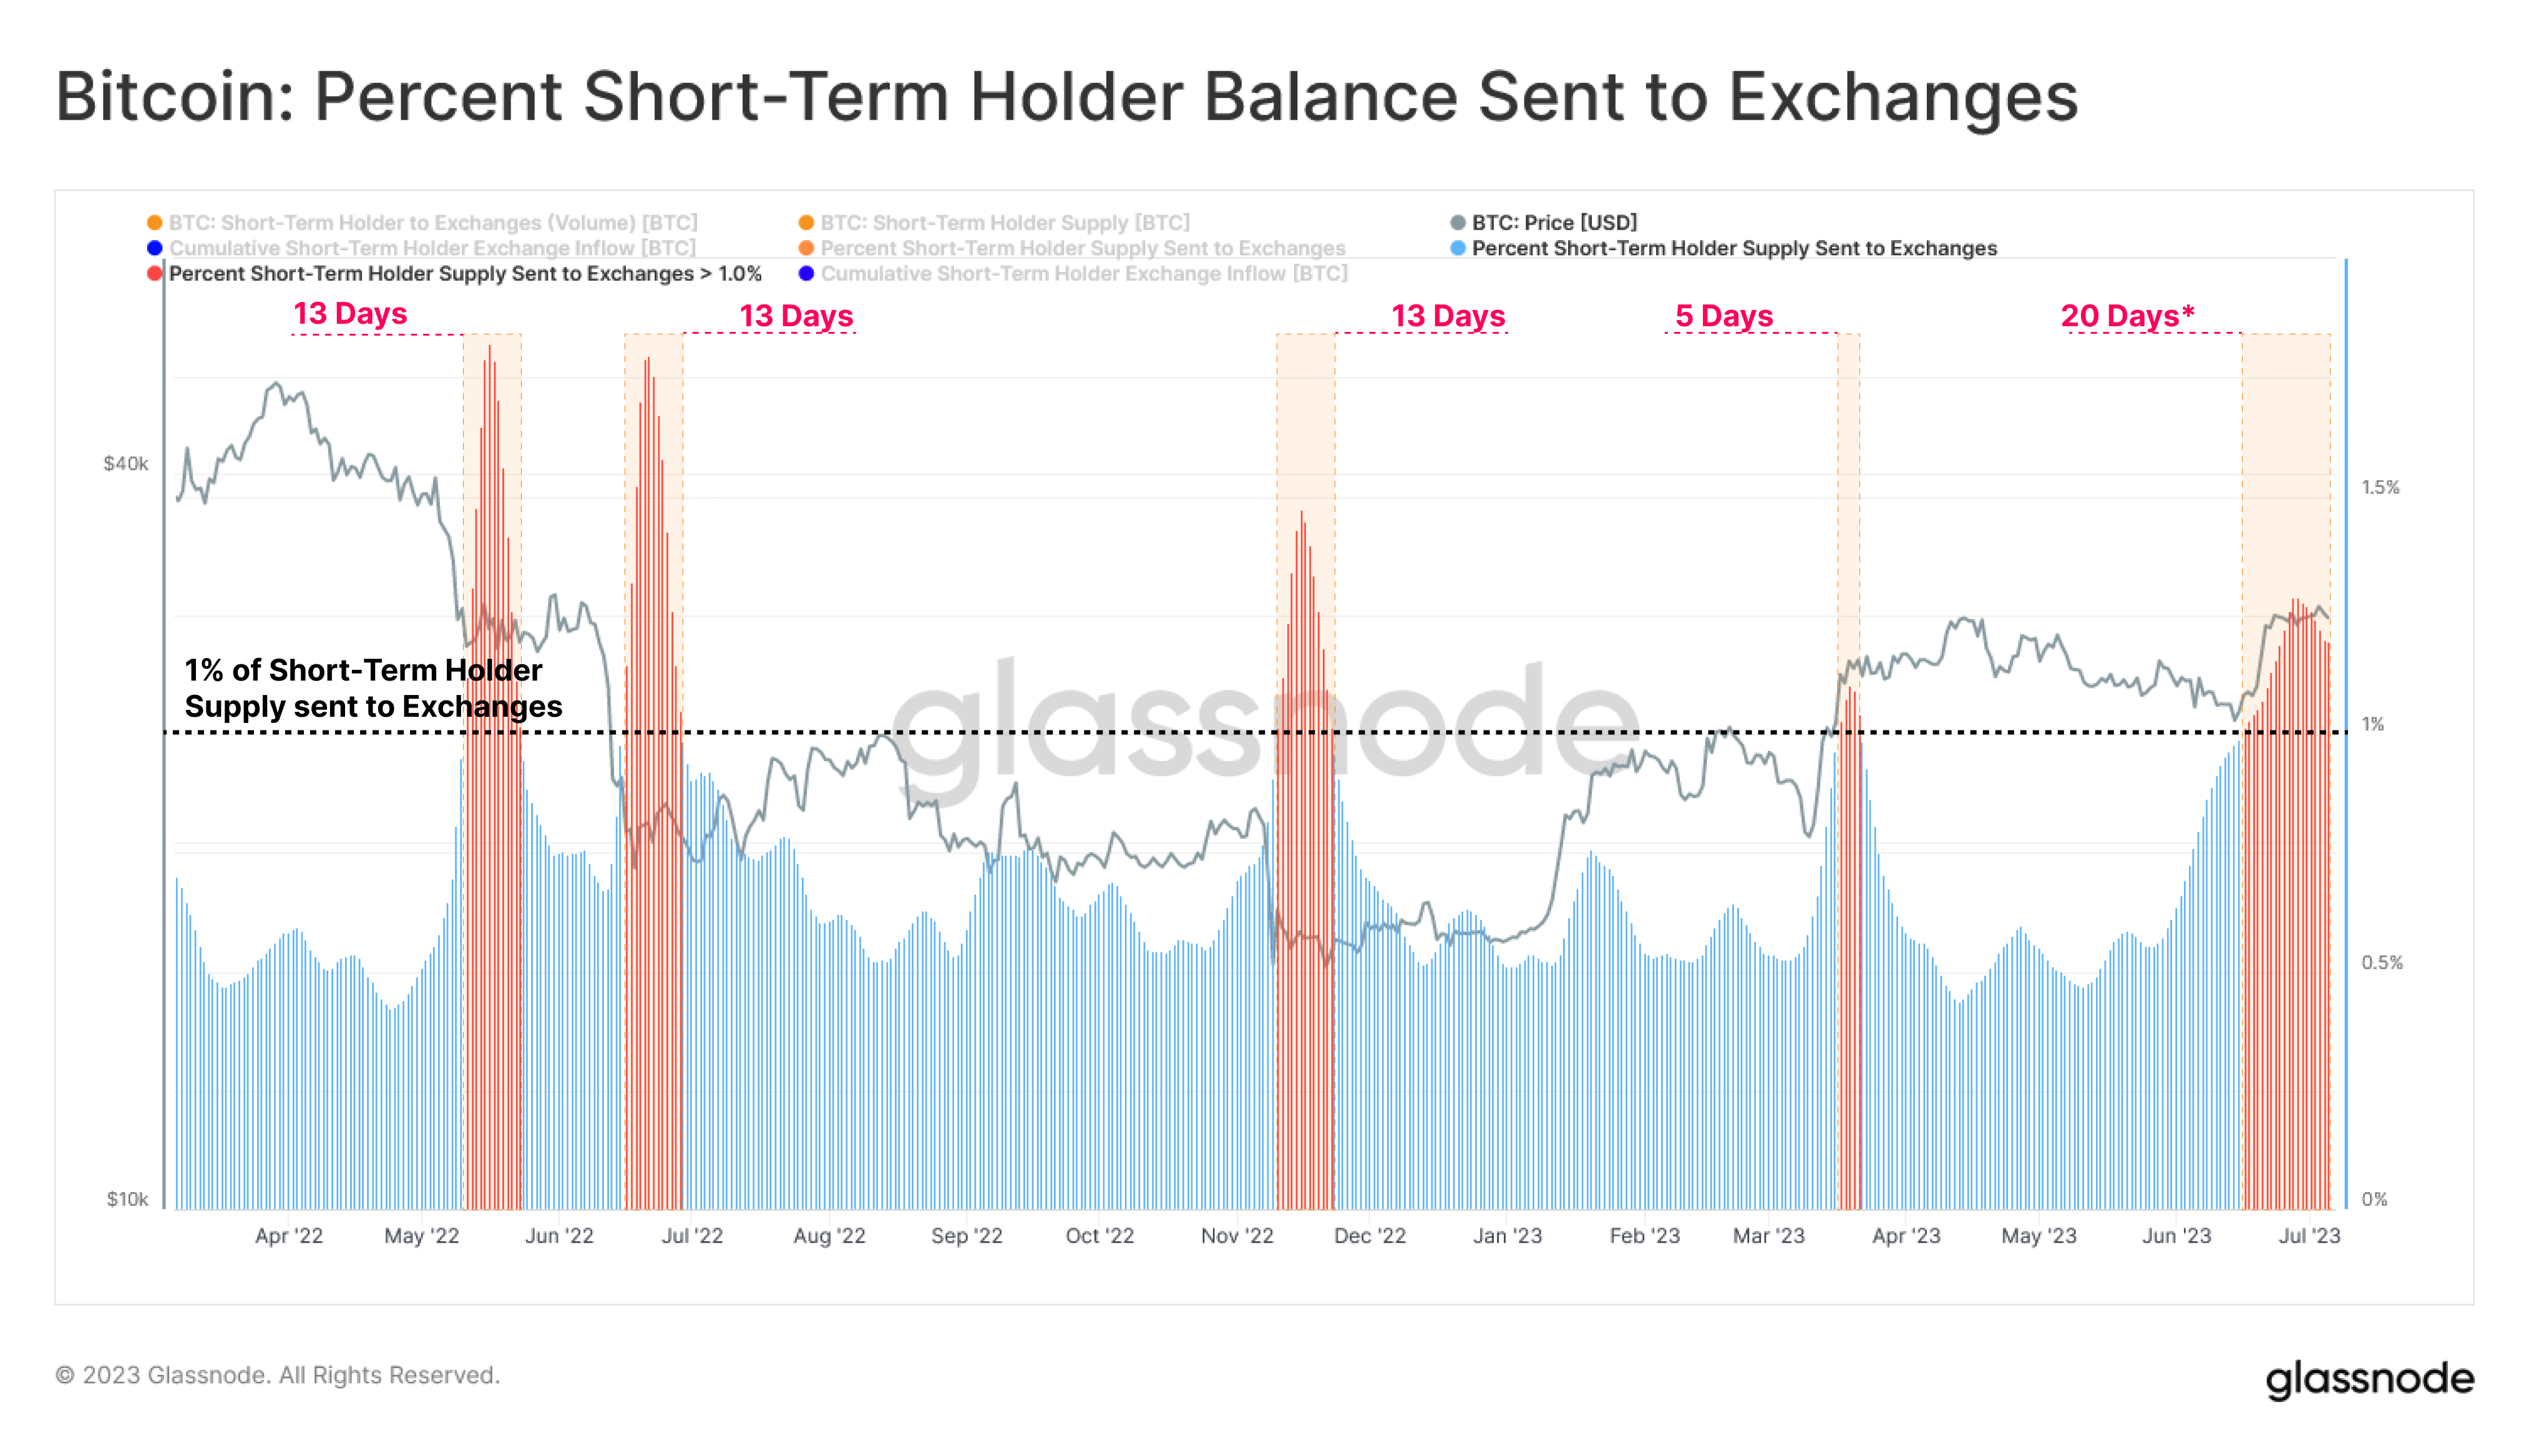 Bitcoin Short-Term Holder Inflows